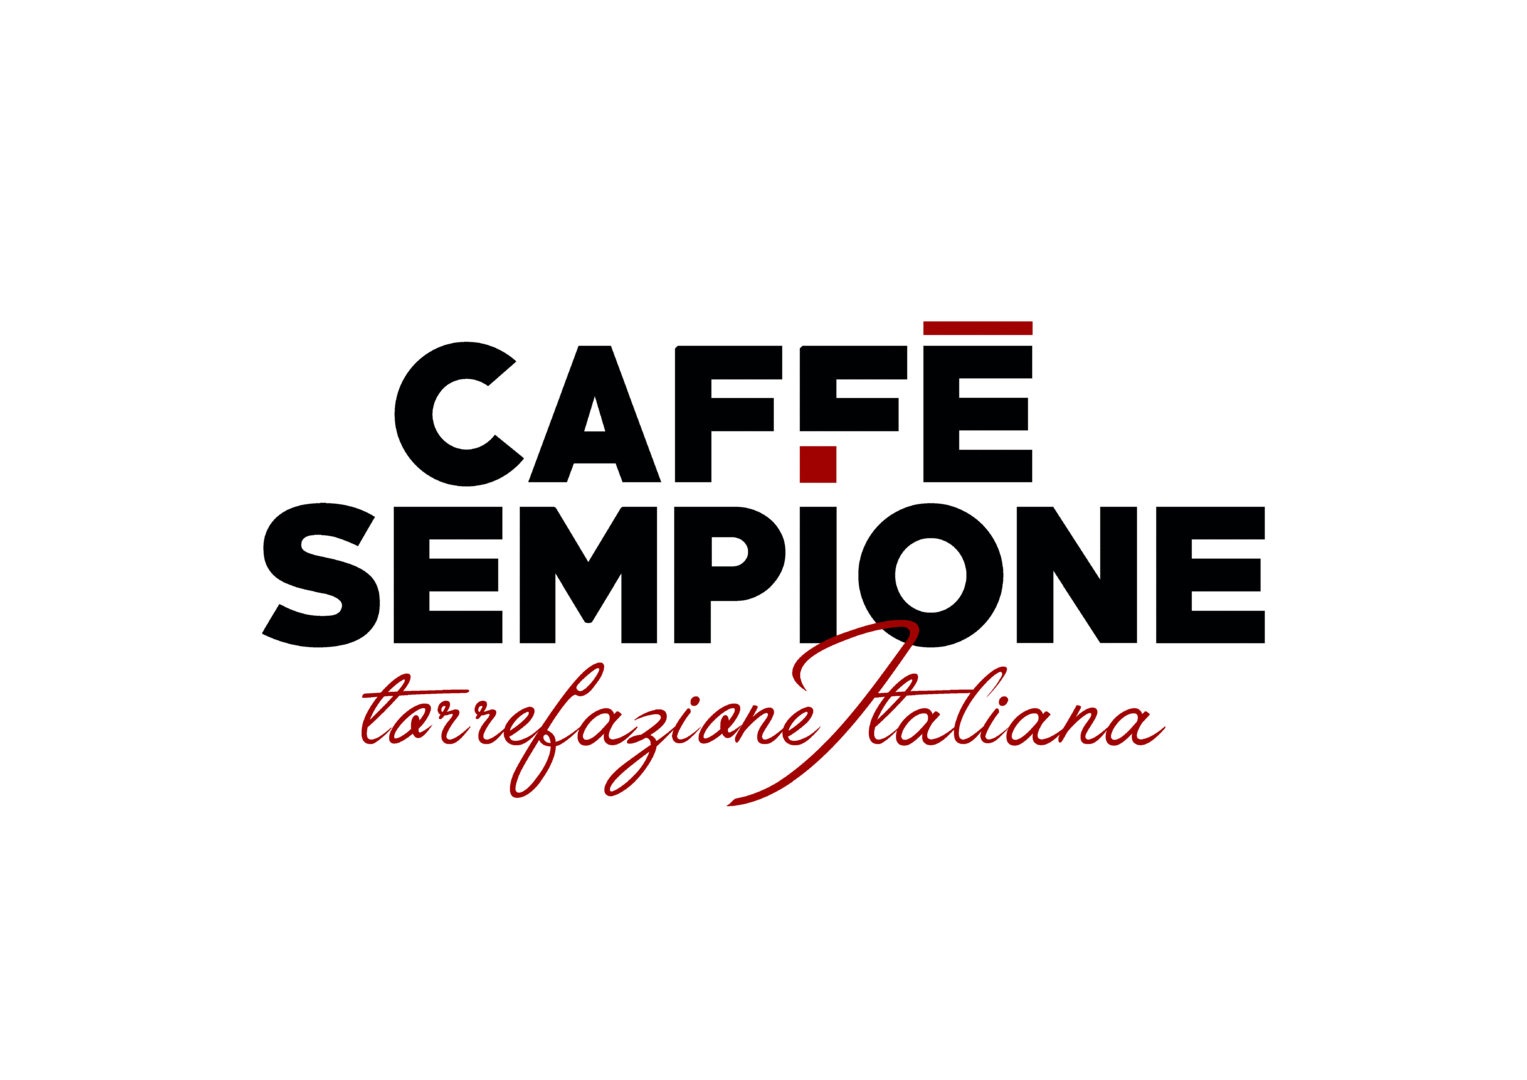 Caffè Sempione - Deciso